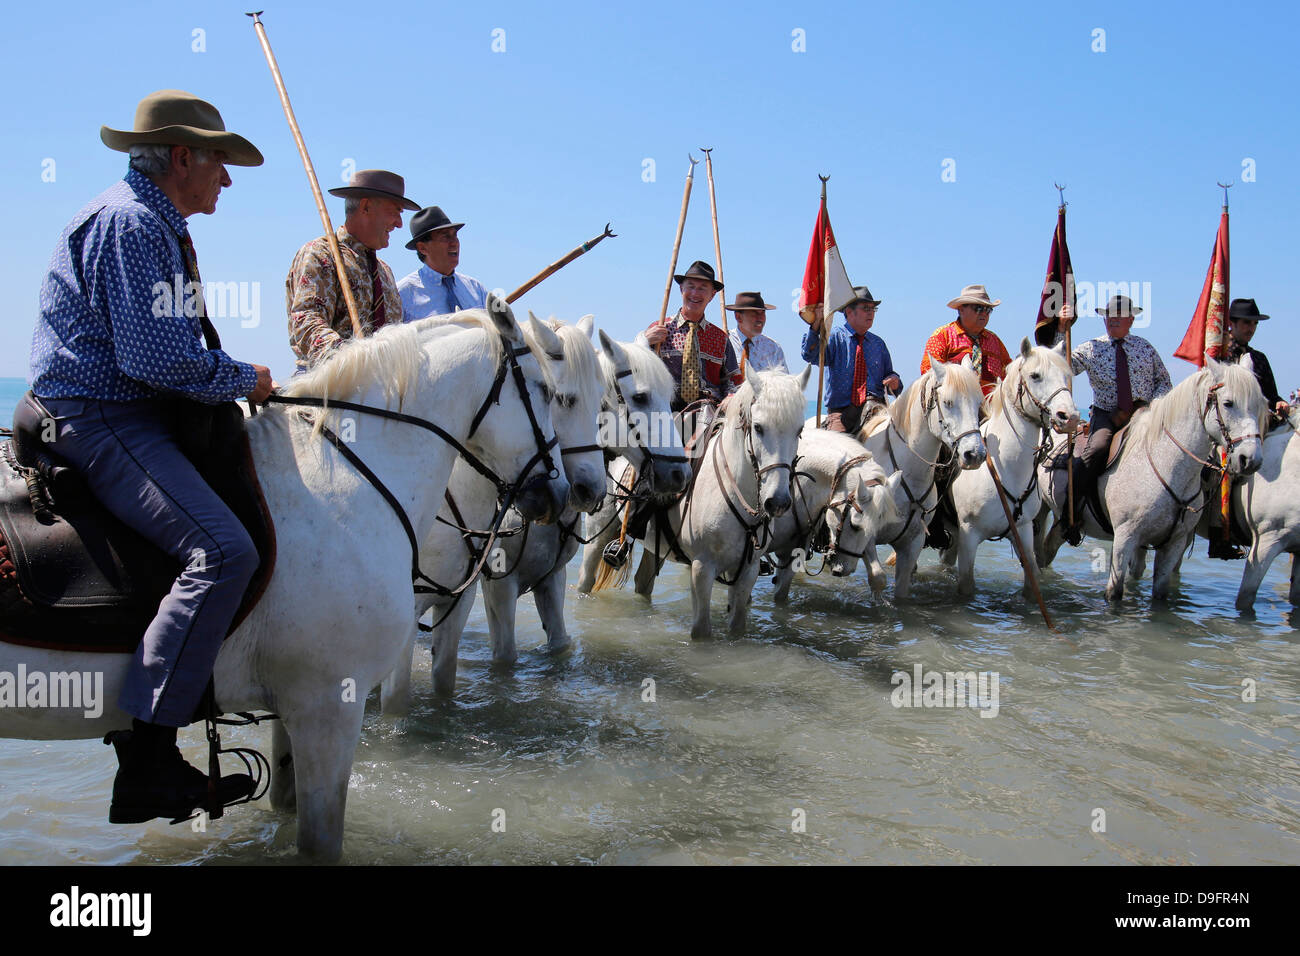 Wächter auf dem Pferderücken begleiten die Prozession zum Meer, Wallfahrtsort Les Saintes-Maries-de-la-Mer, Bouches-du-Rhône, Frankreich Stockfoto